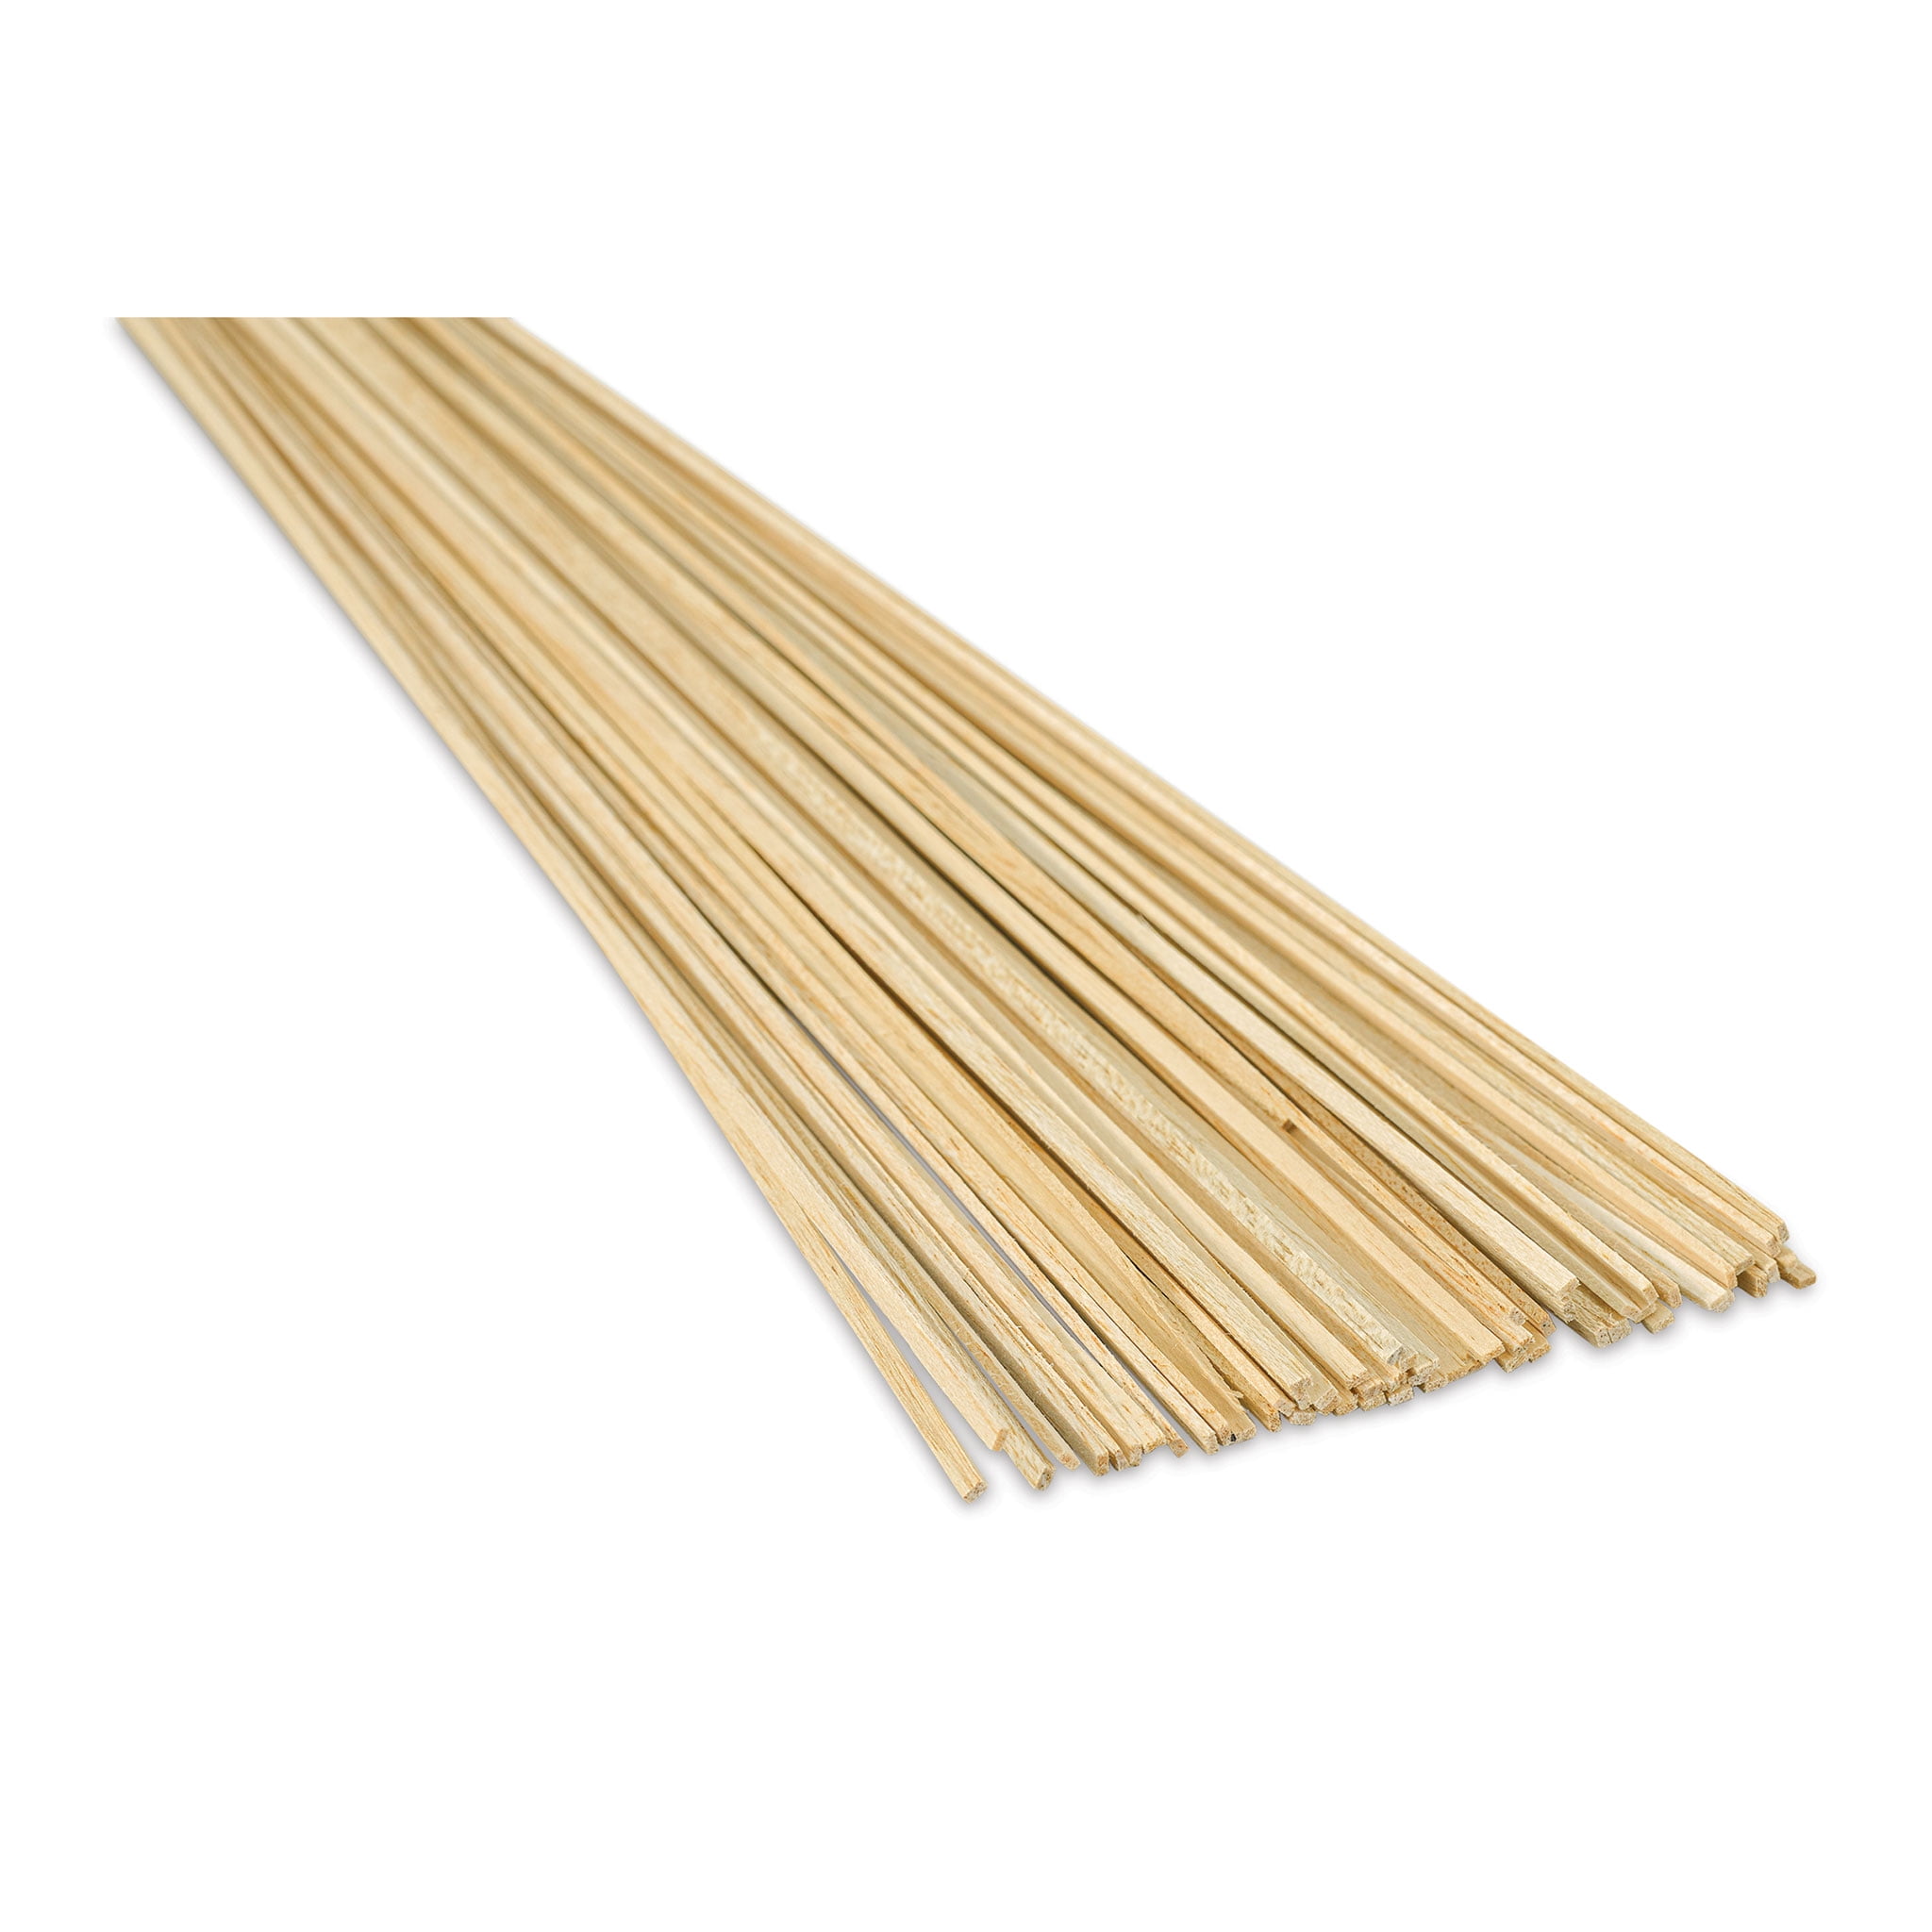 Bud Nosen Balsa Wood Sticks - 1/16 x 1/8 x 36, Pkg of 57 